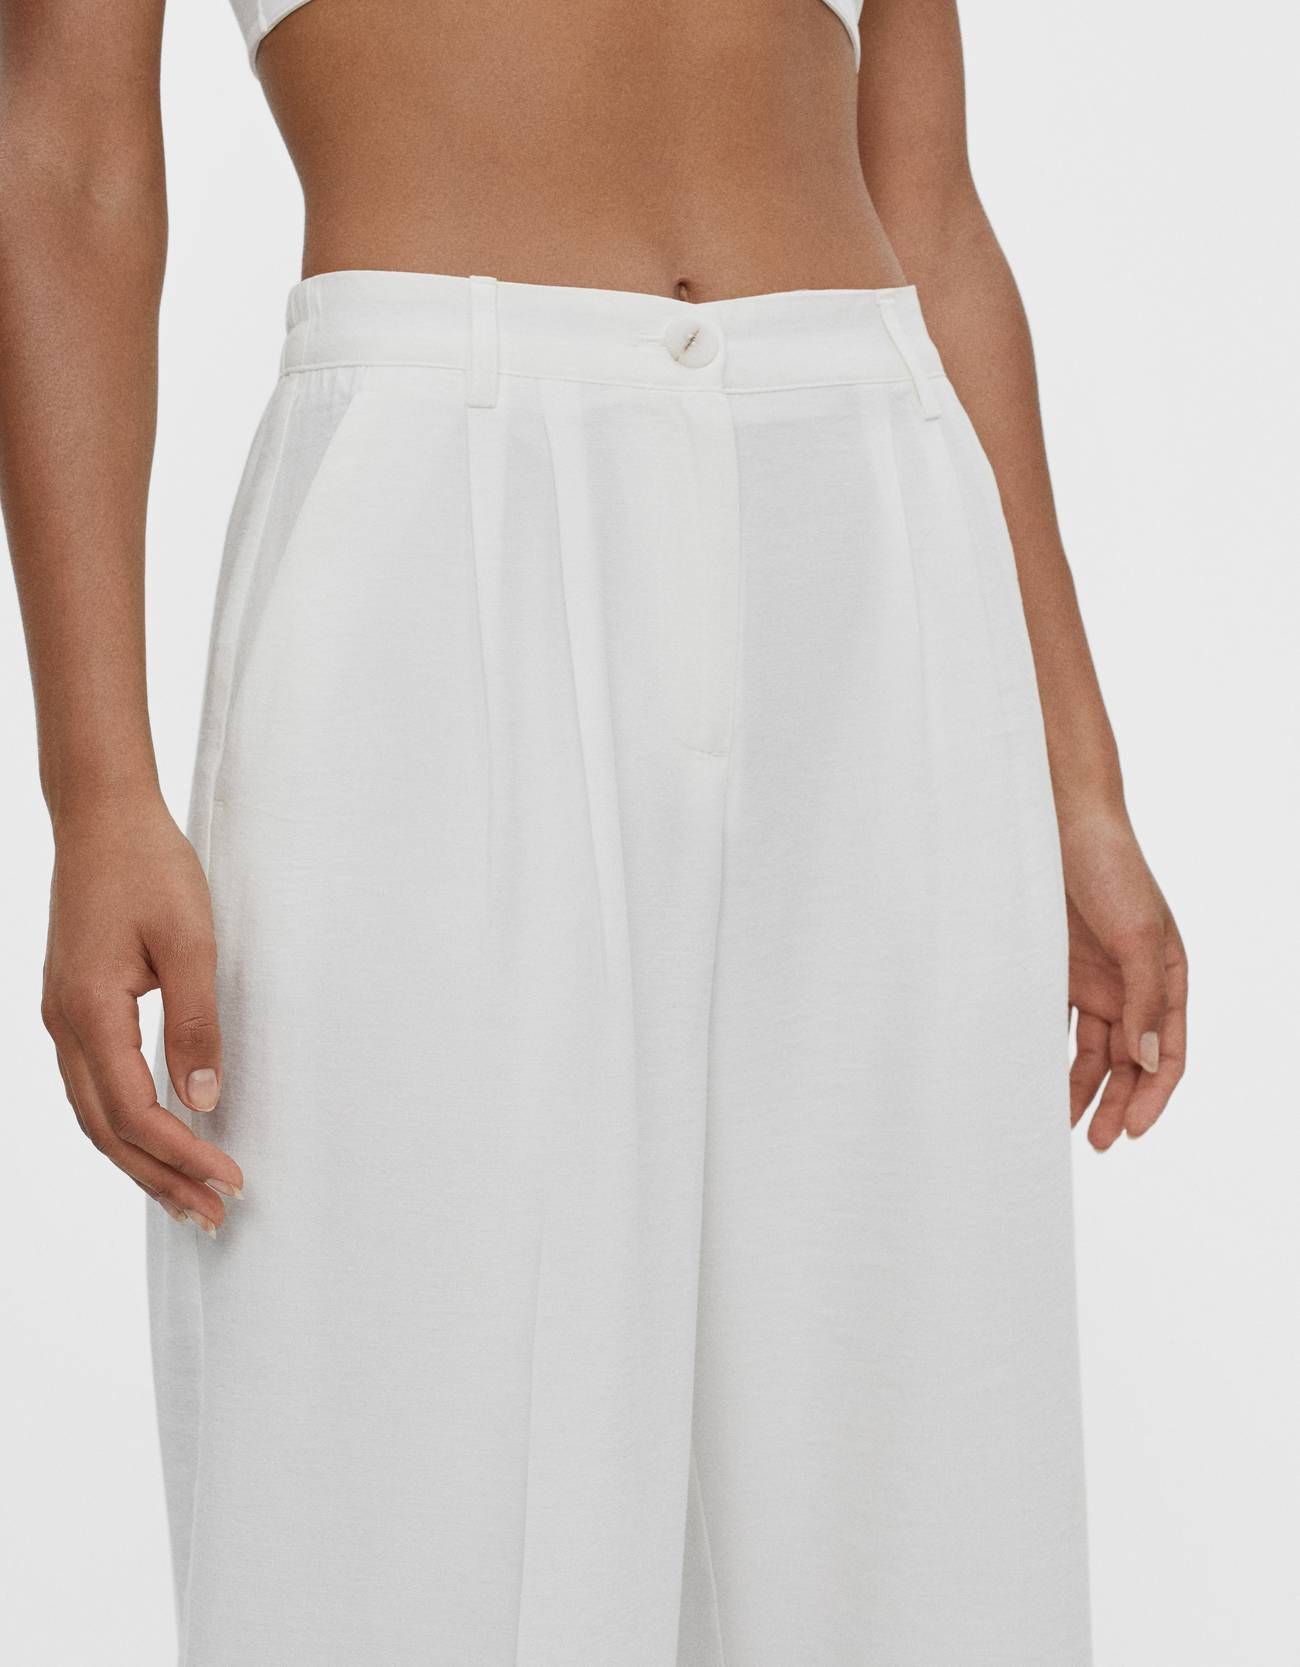 5 pantalones blancos que encajan a la perfección en tus looks de